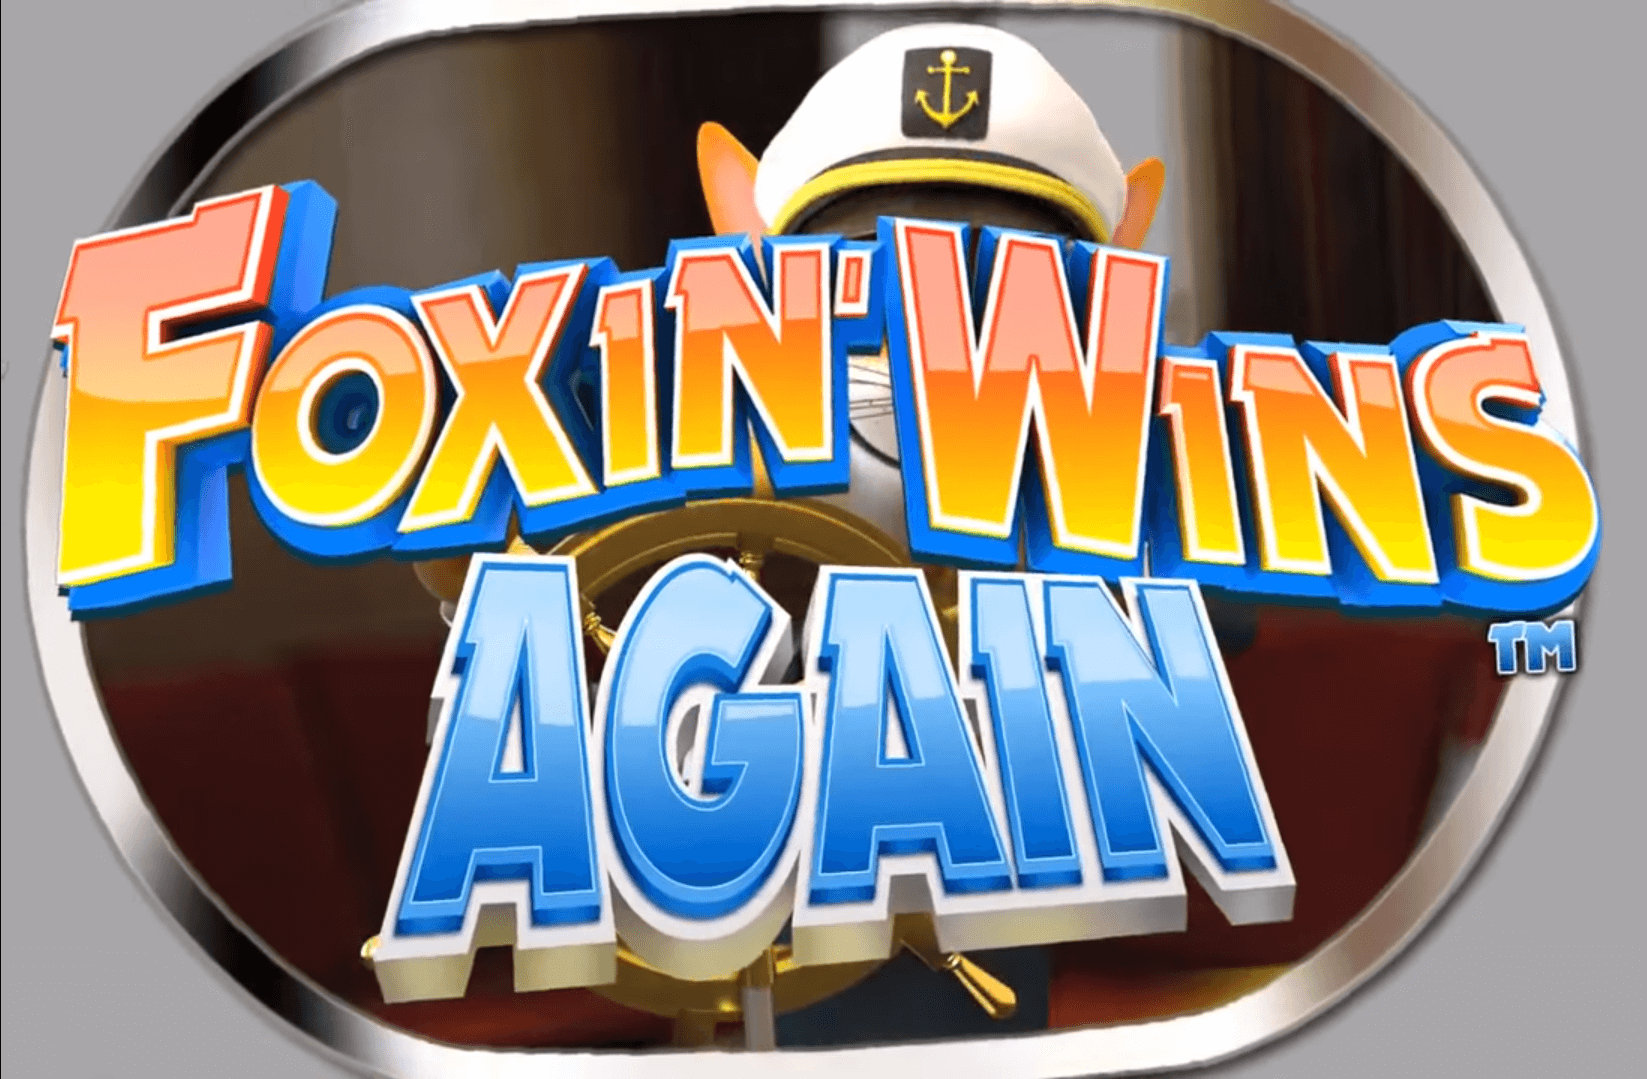 Foxin' Wins Again Slot Gambling